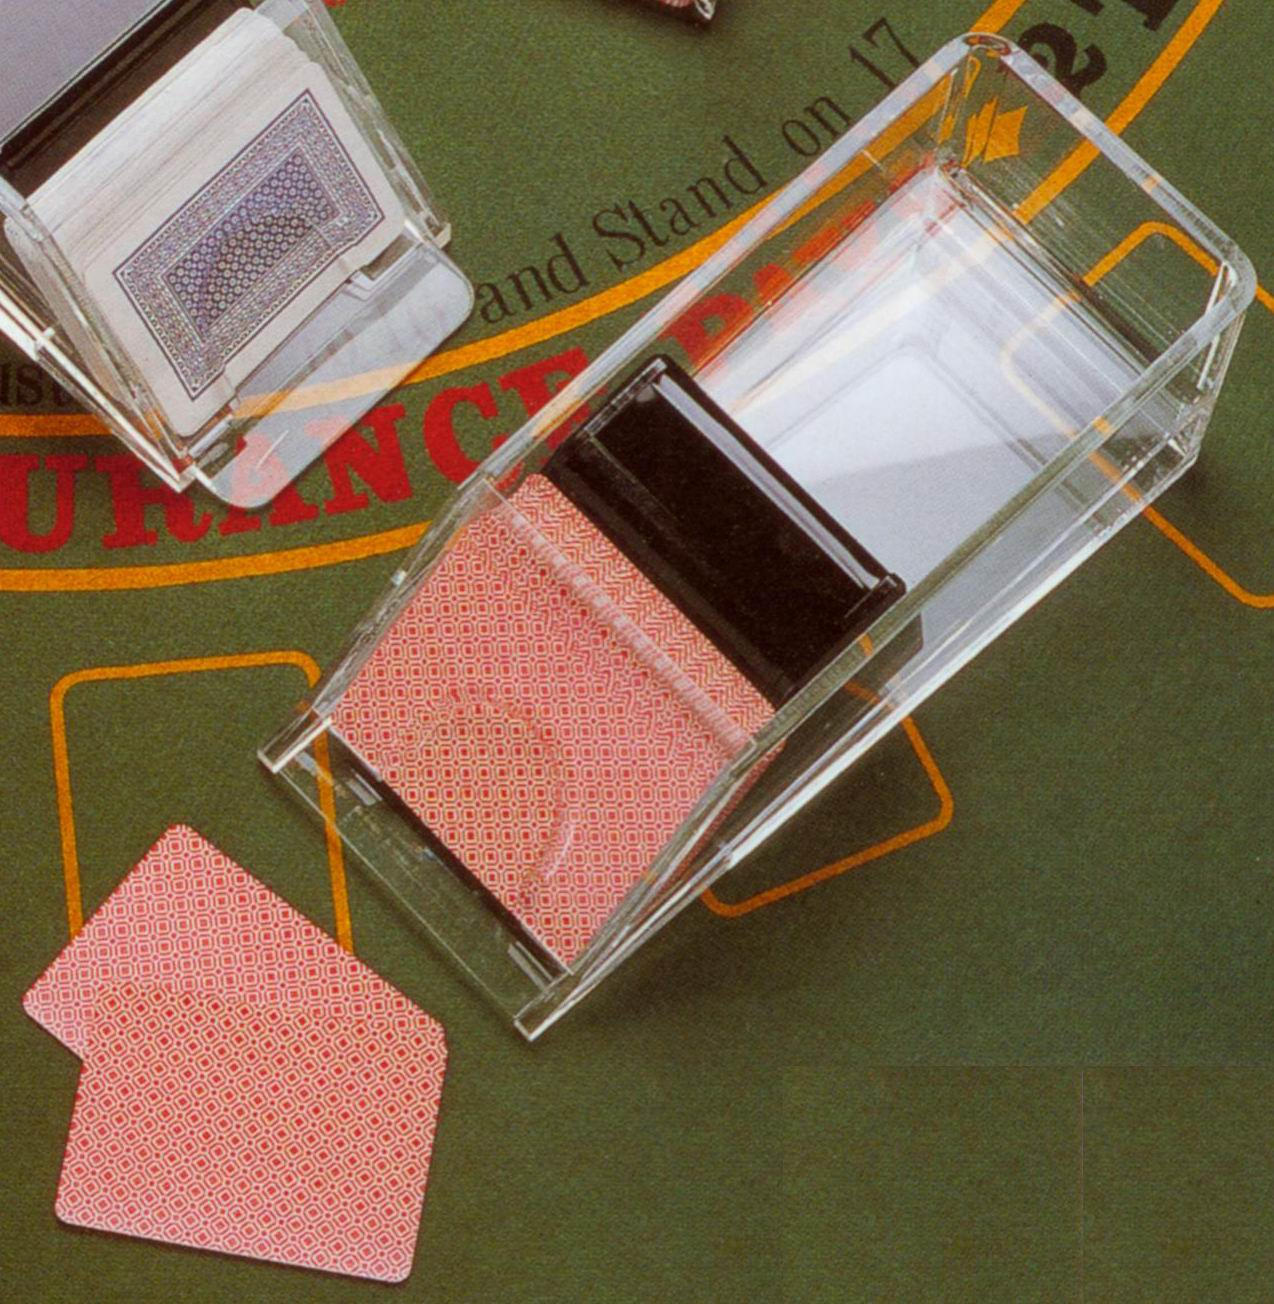 acrylic dealer shoe for 4 / 6 decks of playing cards (Marchand de chaussures en acrylique pour 4 / 6 jeux de cartes à jouer)